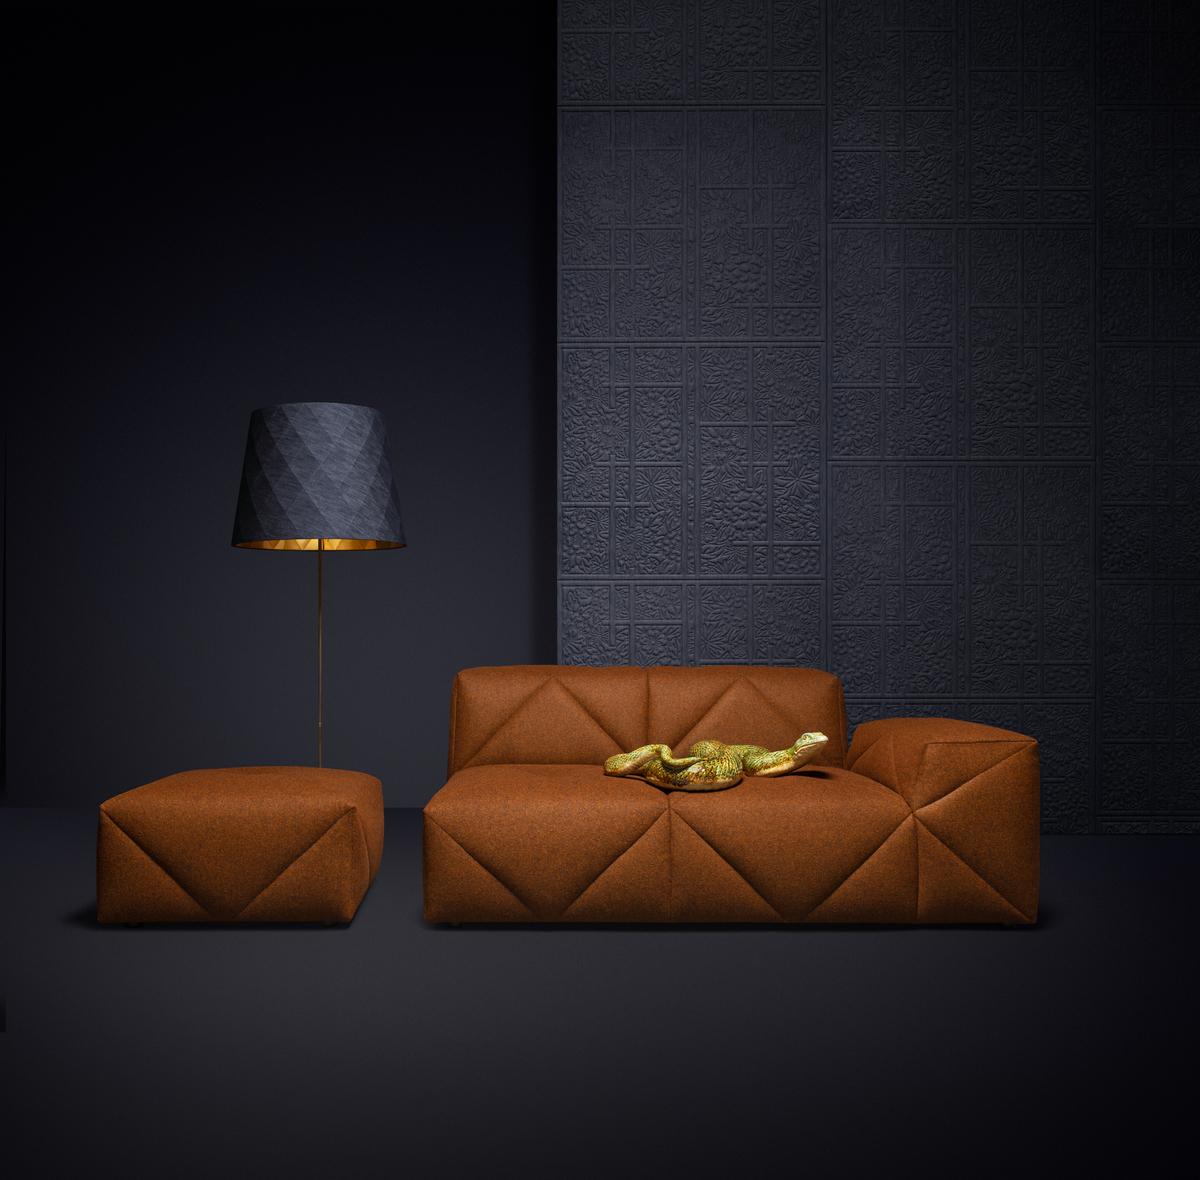 Das preisgekrönte BFF-Sofa von Marcel Wanders ist der neue beste Freund von allen! Ein hochwertiges, weiches und doch festes modulares Sofasystem, das aus einer Vielzahl von Modulen für endlose Konfigurationen besteht. Ein modulares Sofasystem, das